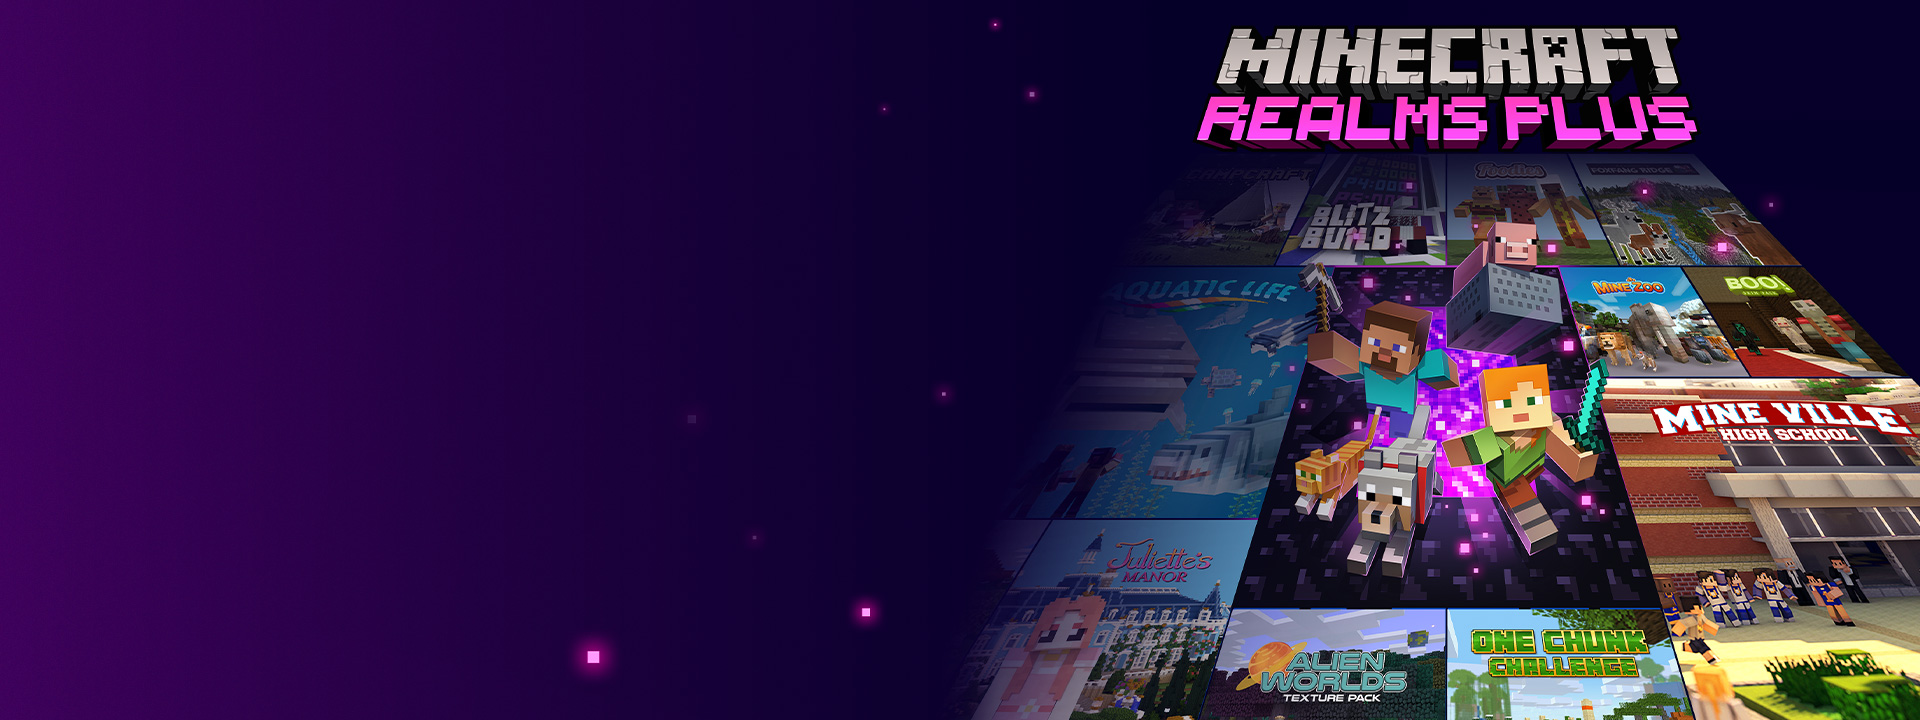 Minecraft Realms Plus, Minecraft-figurer som kommer ut ur en portal i Nether med andra lådbilder bredvid